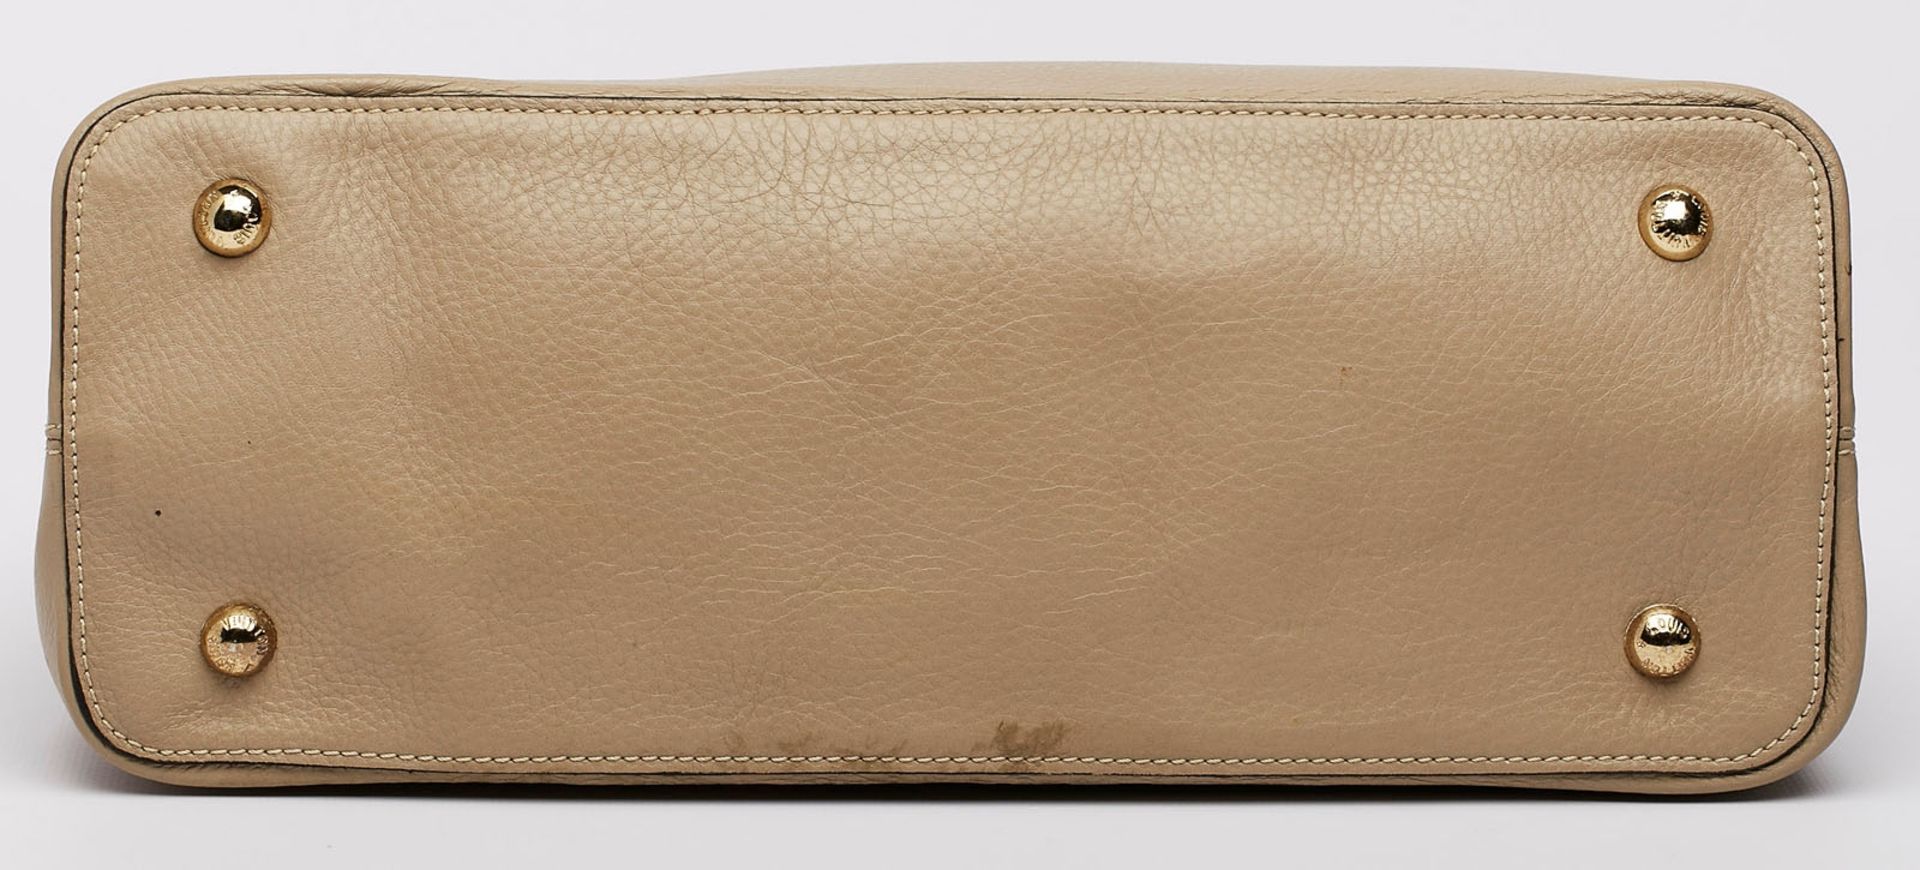 Handtasche "Capucines", Louis Vuitton wohl um 2015. - Image 4 of 4